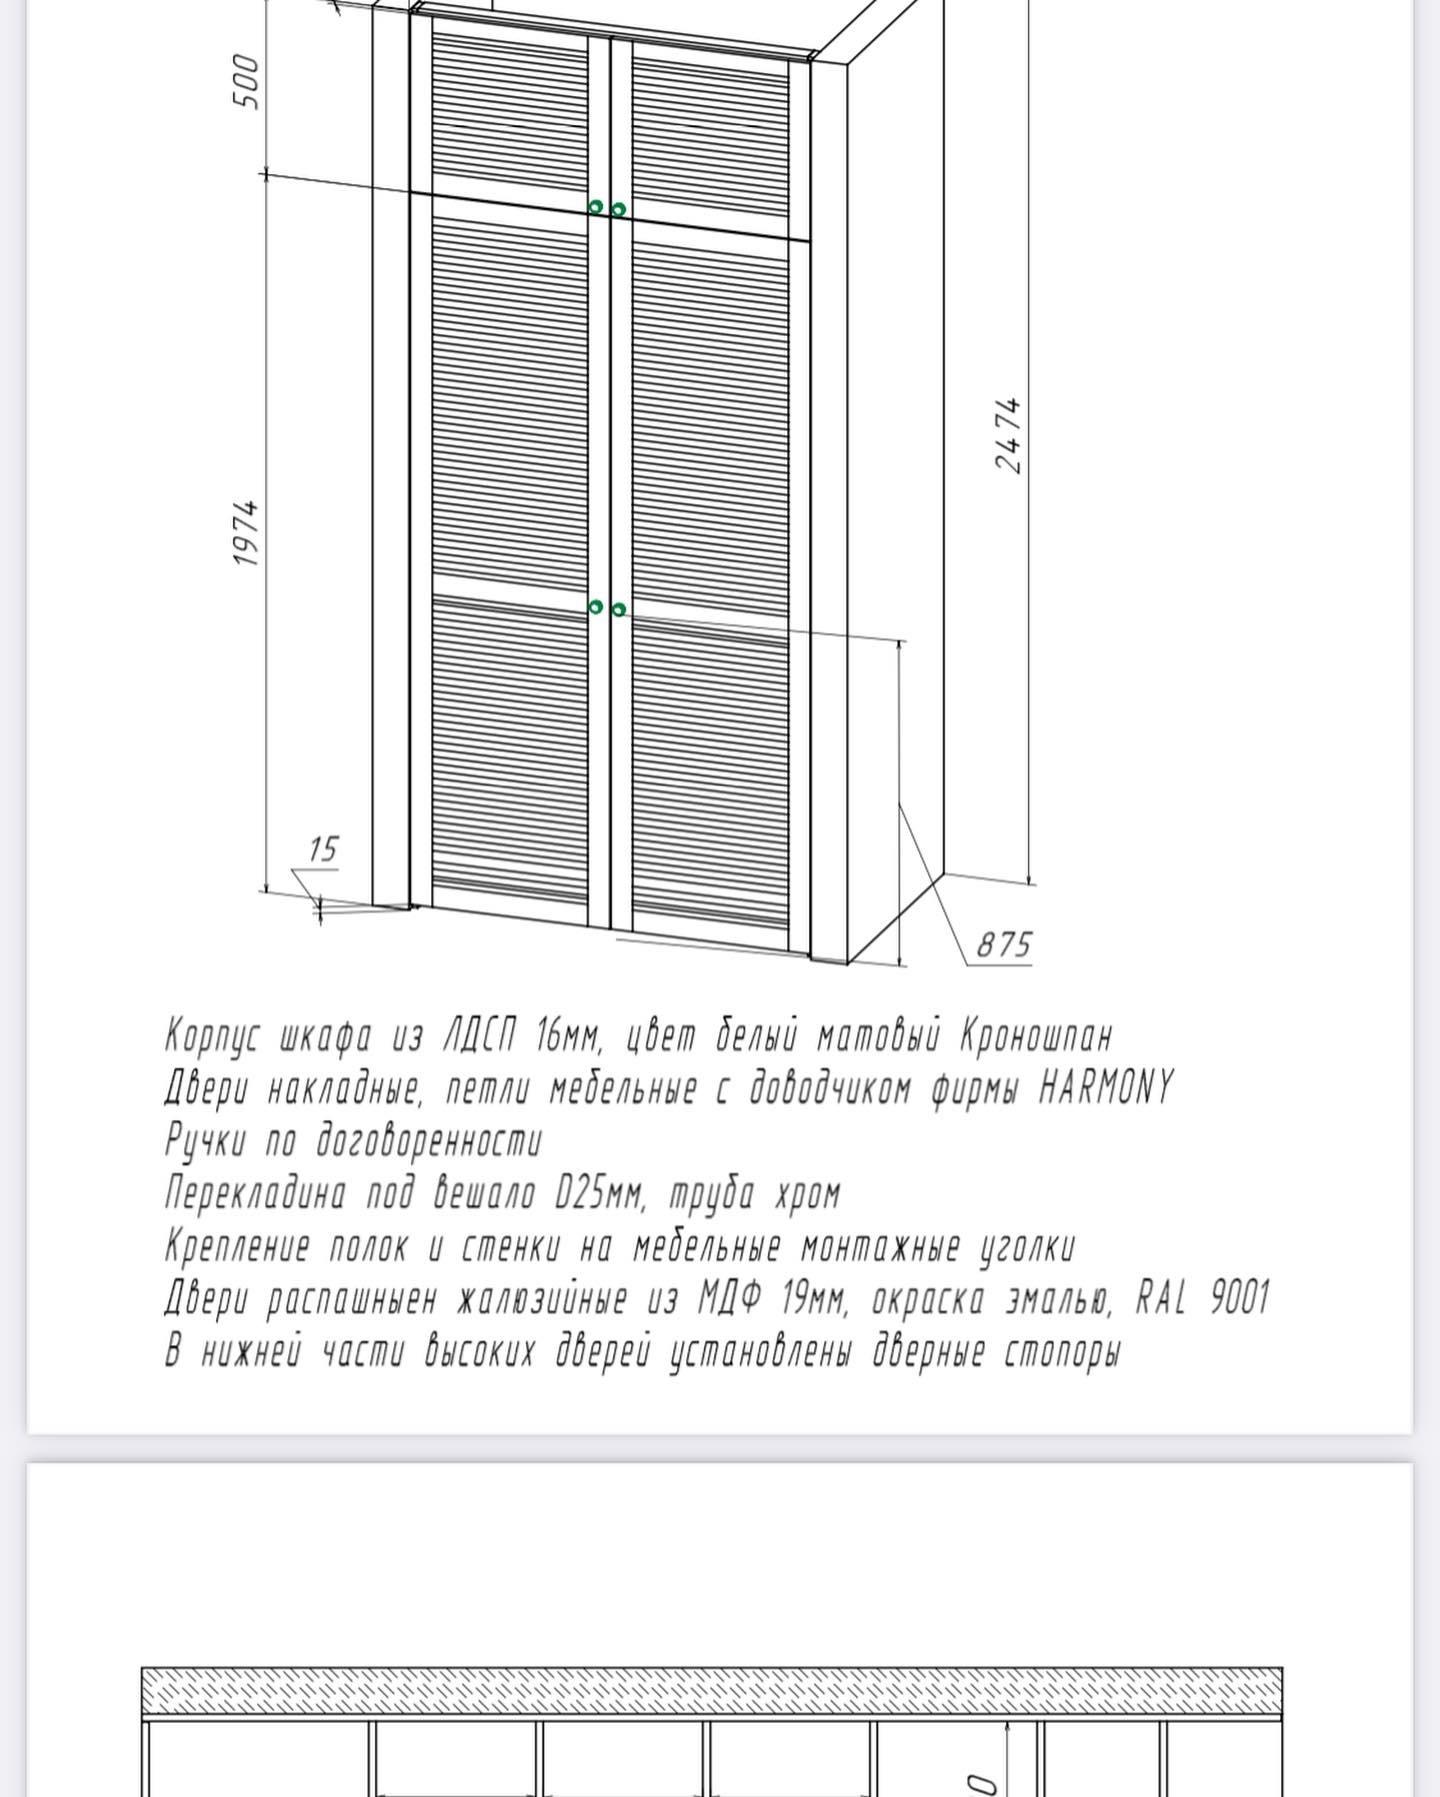 Схема шкафа на балконе с размерами